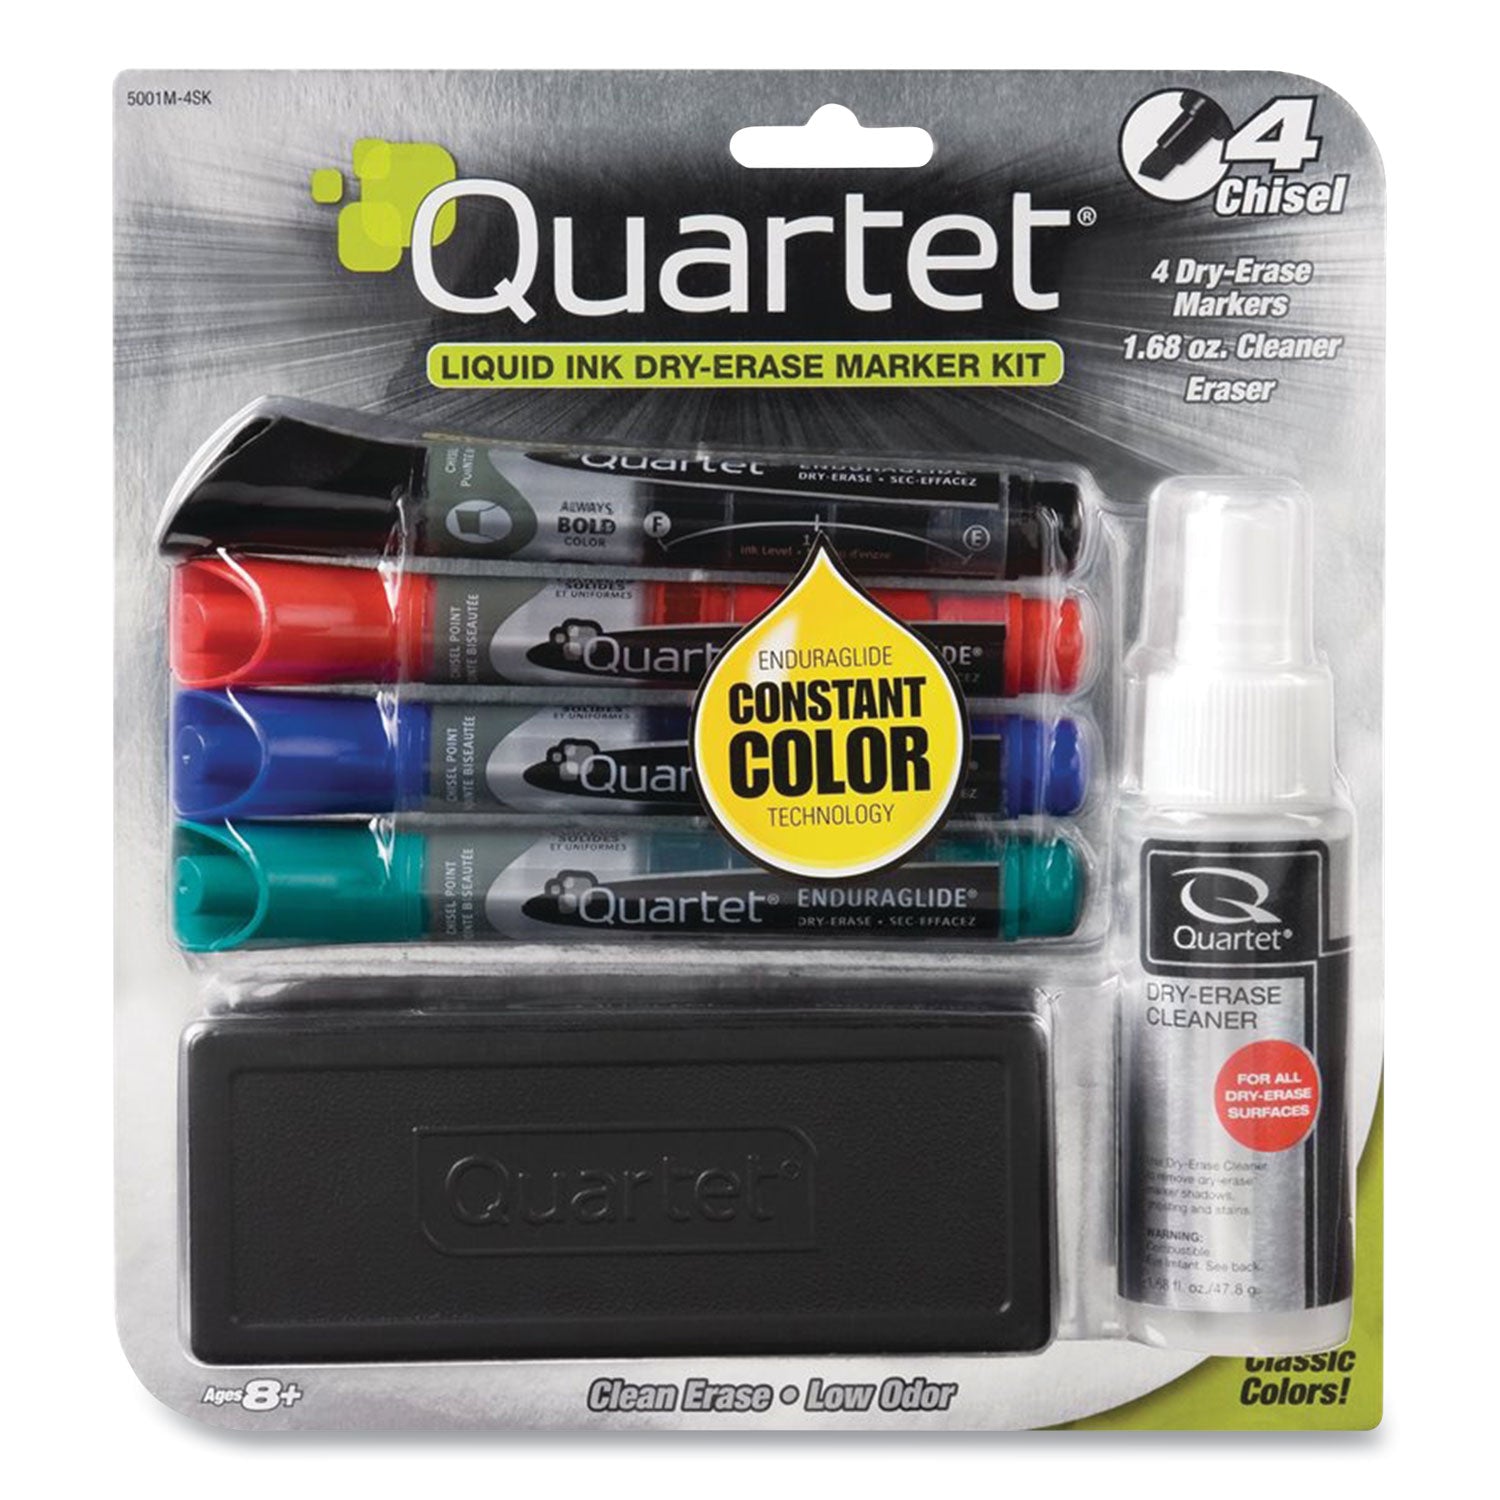 enduraglide-dry-erase-marker-kit-with-cleaner-and-eraser-broad-chisel-tip-assorted-colors-4-pack_qrt5001m4sk - 1